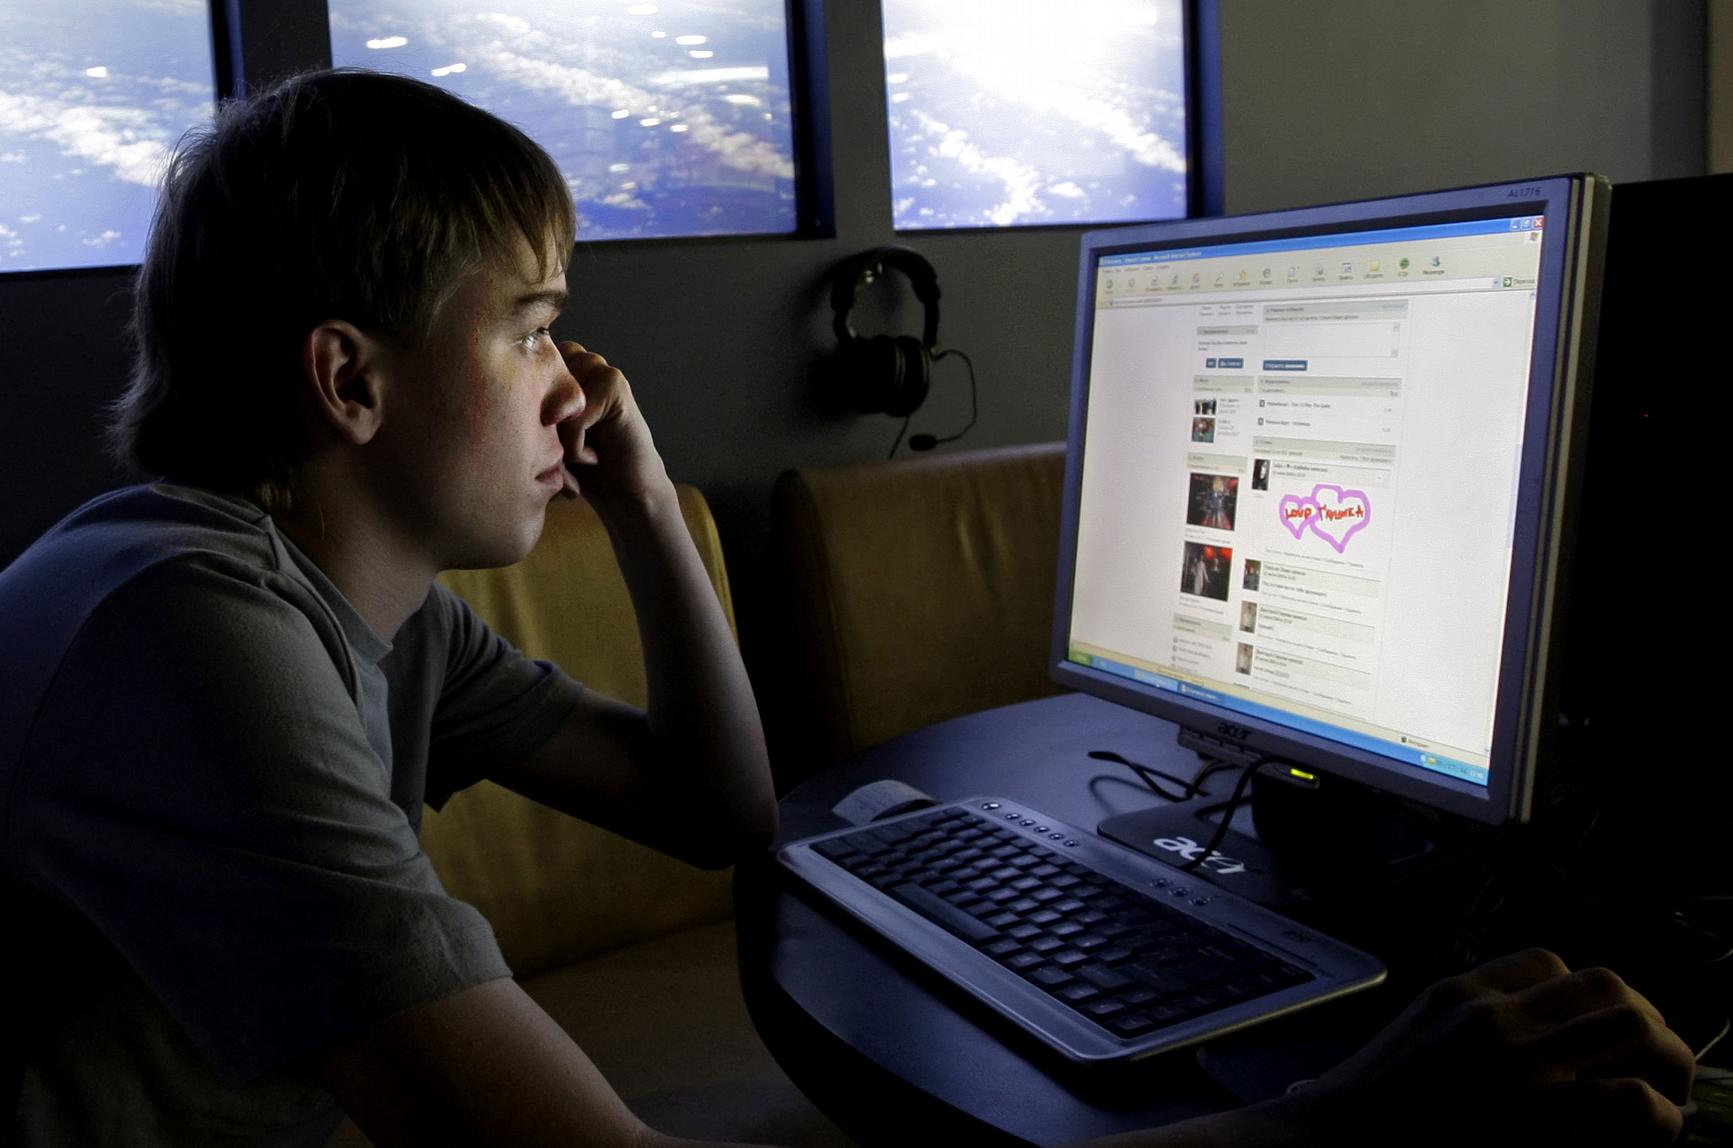 Οκτακόσιοι και πλέον έφηβοι έχουν δηλώσει εξαρτημένοι από το Διαδίκτυο